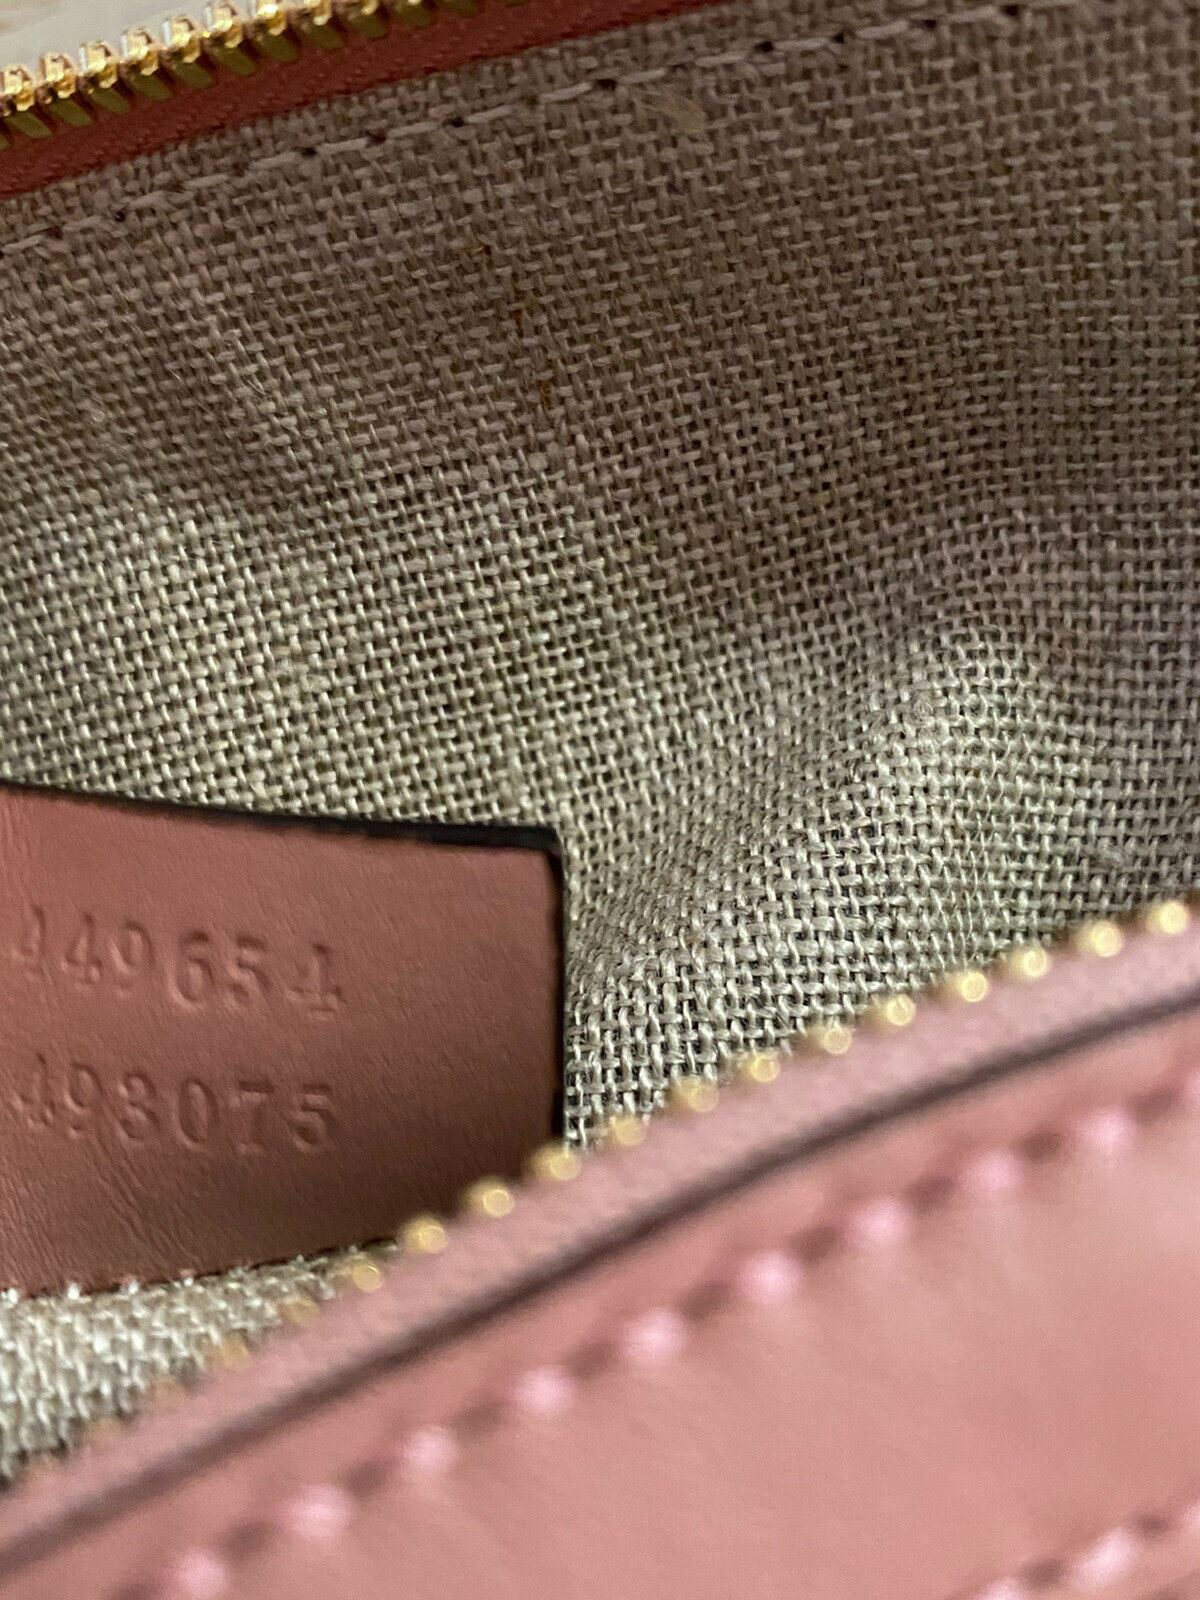 Neue Gucci Guccissimma Kleine Leder-Umhängetasche Pink/LT Pink 449654